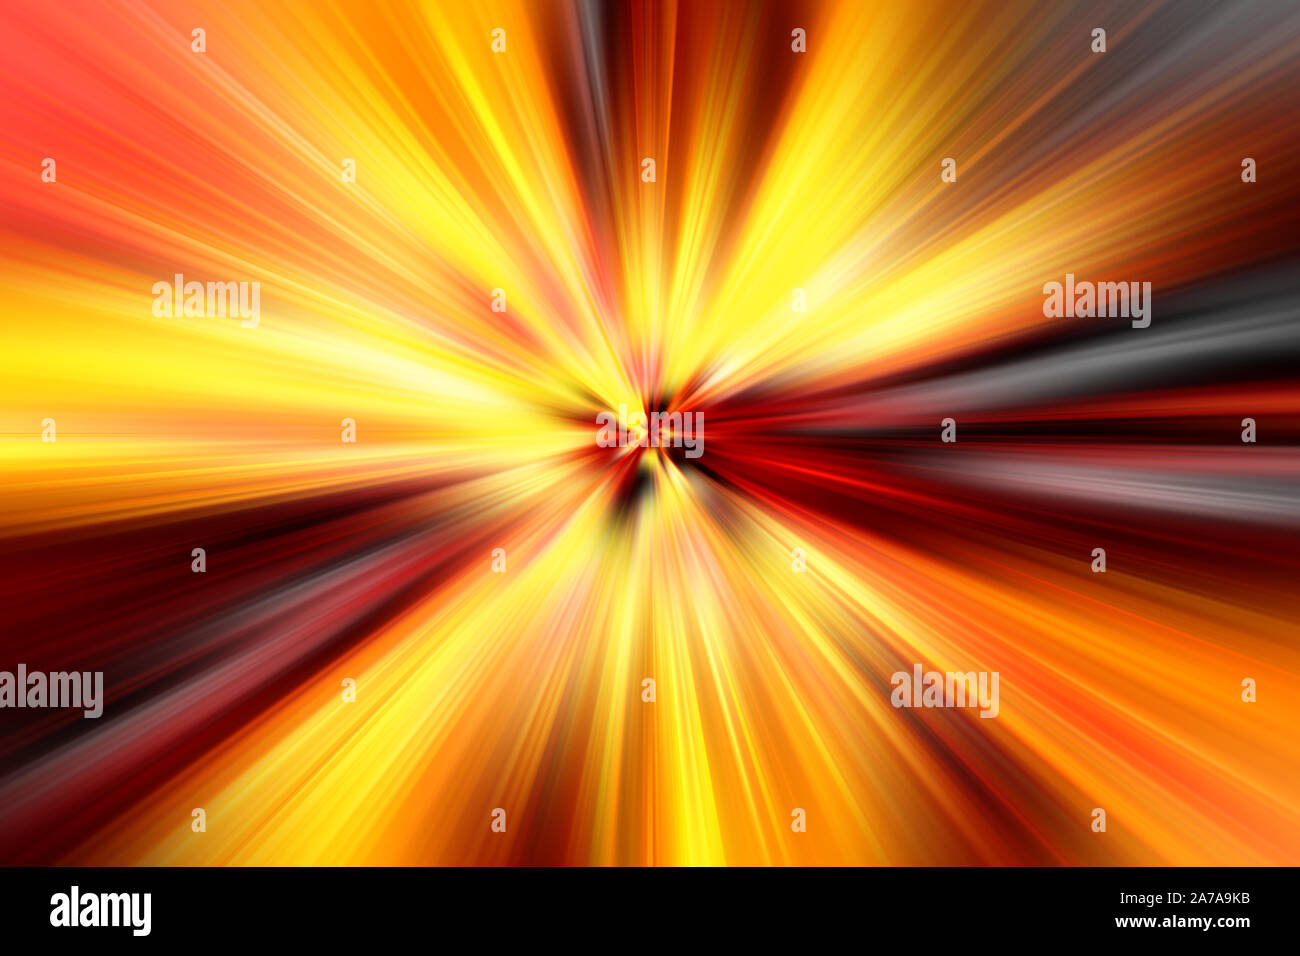 Un abstract starburst immagine di sfondo. Foto Stock